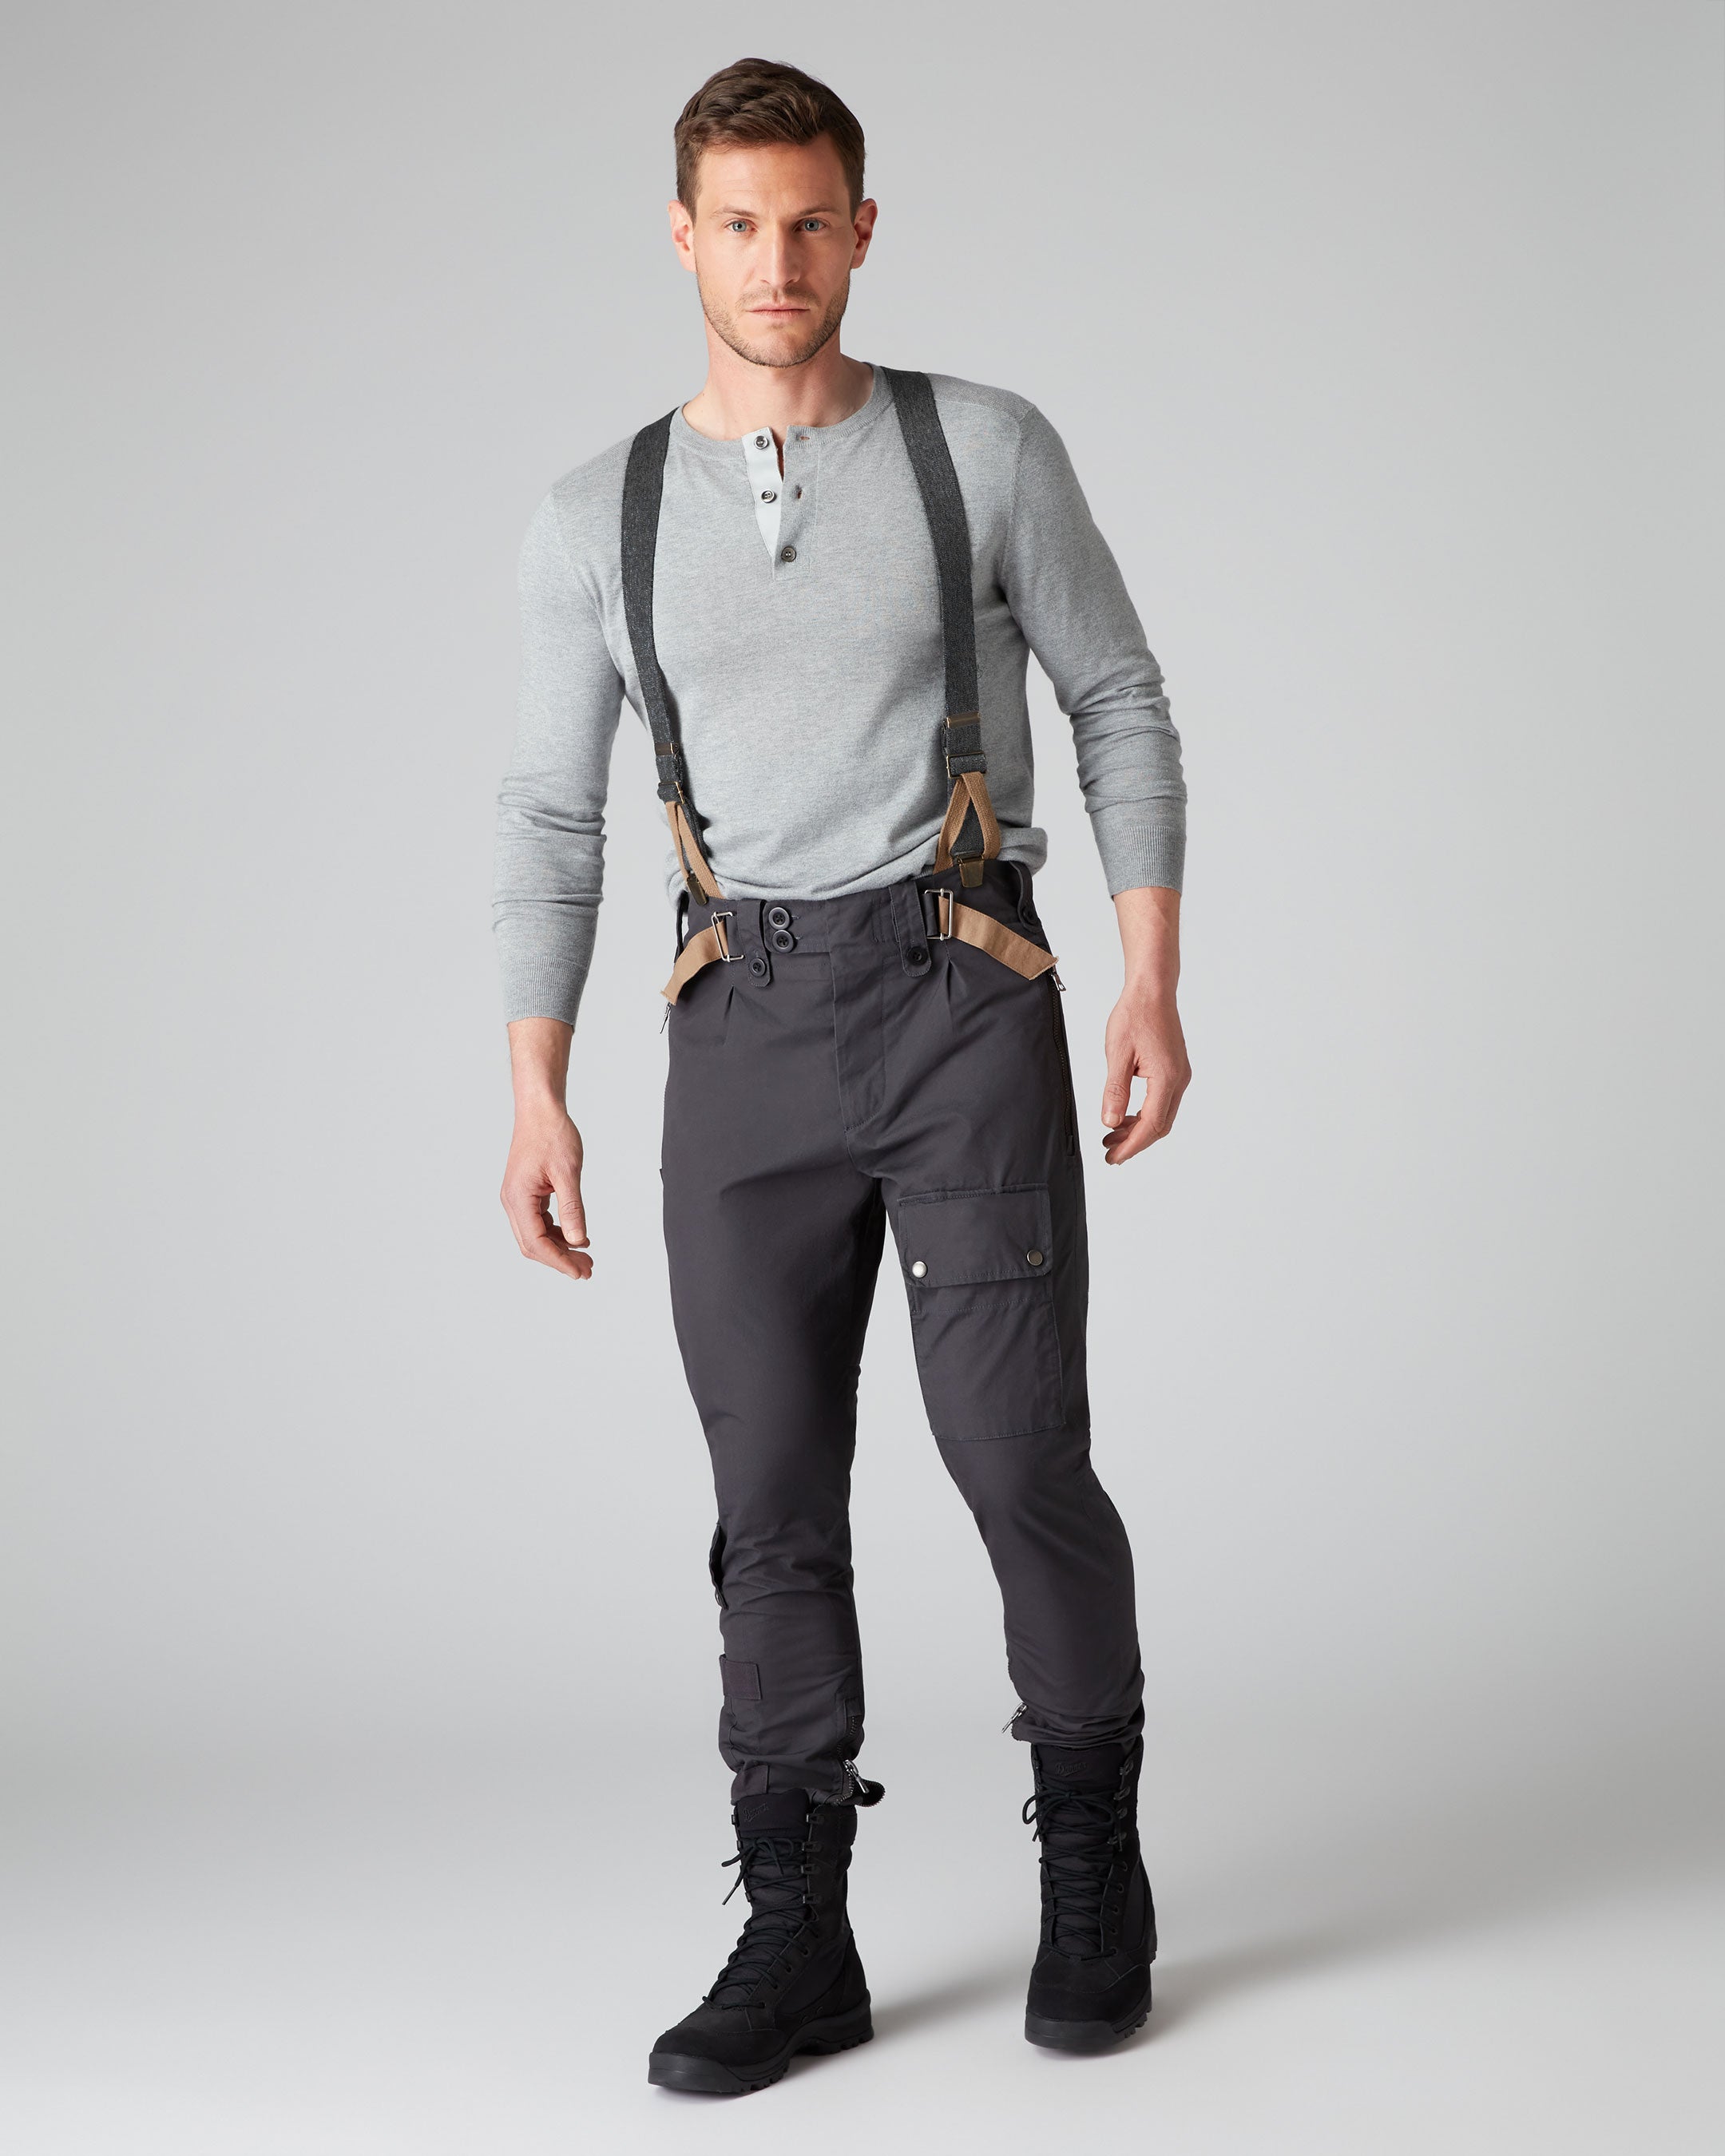 Work Trousers Pants Flexible Combat Style Heavy Duty -ORANGE- Multi Pockets+ BELT | eBay